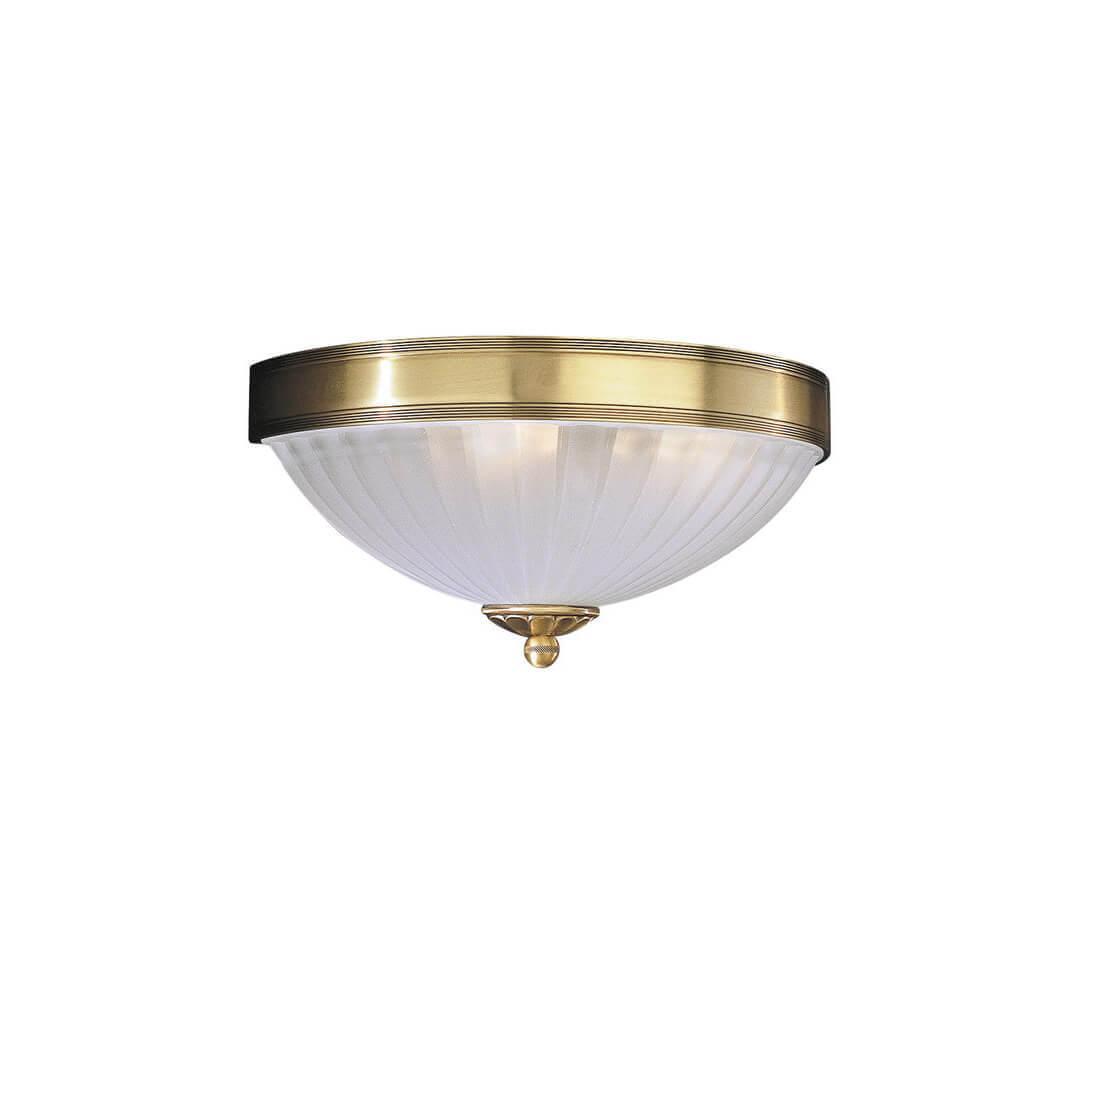 Настенный светильник Reccagni Angelo A.2305/2 настенный смеситель bronze de luxe